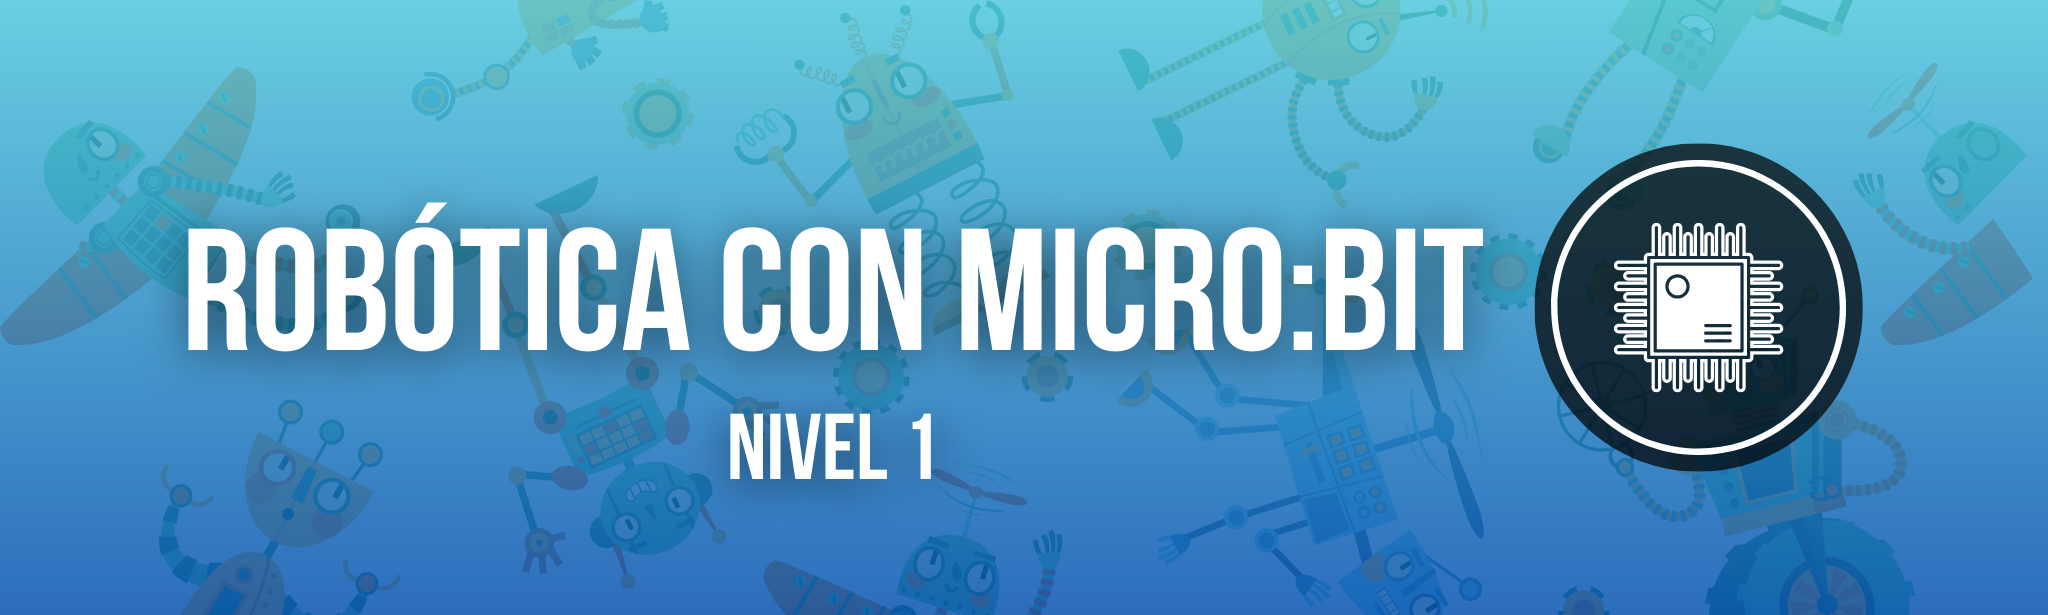 Microbit 1 (1)